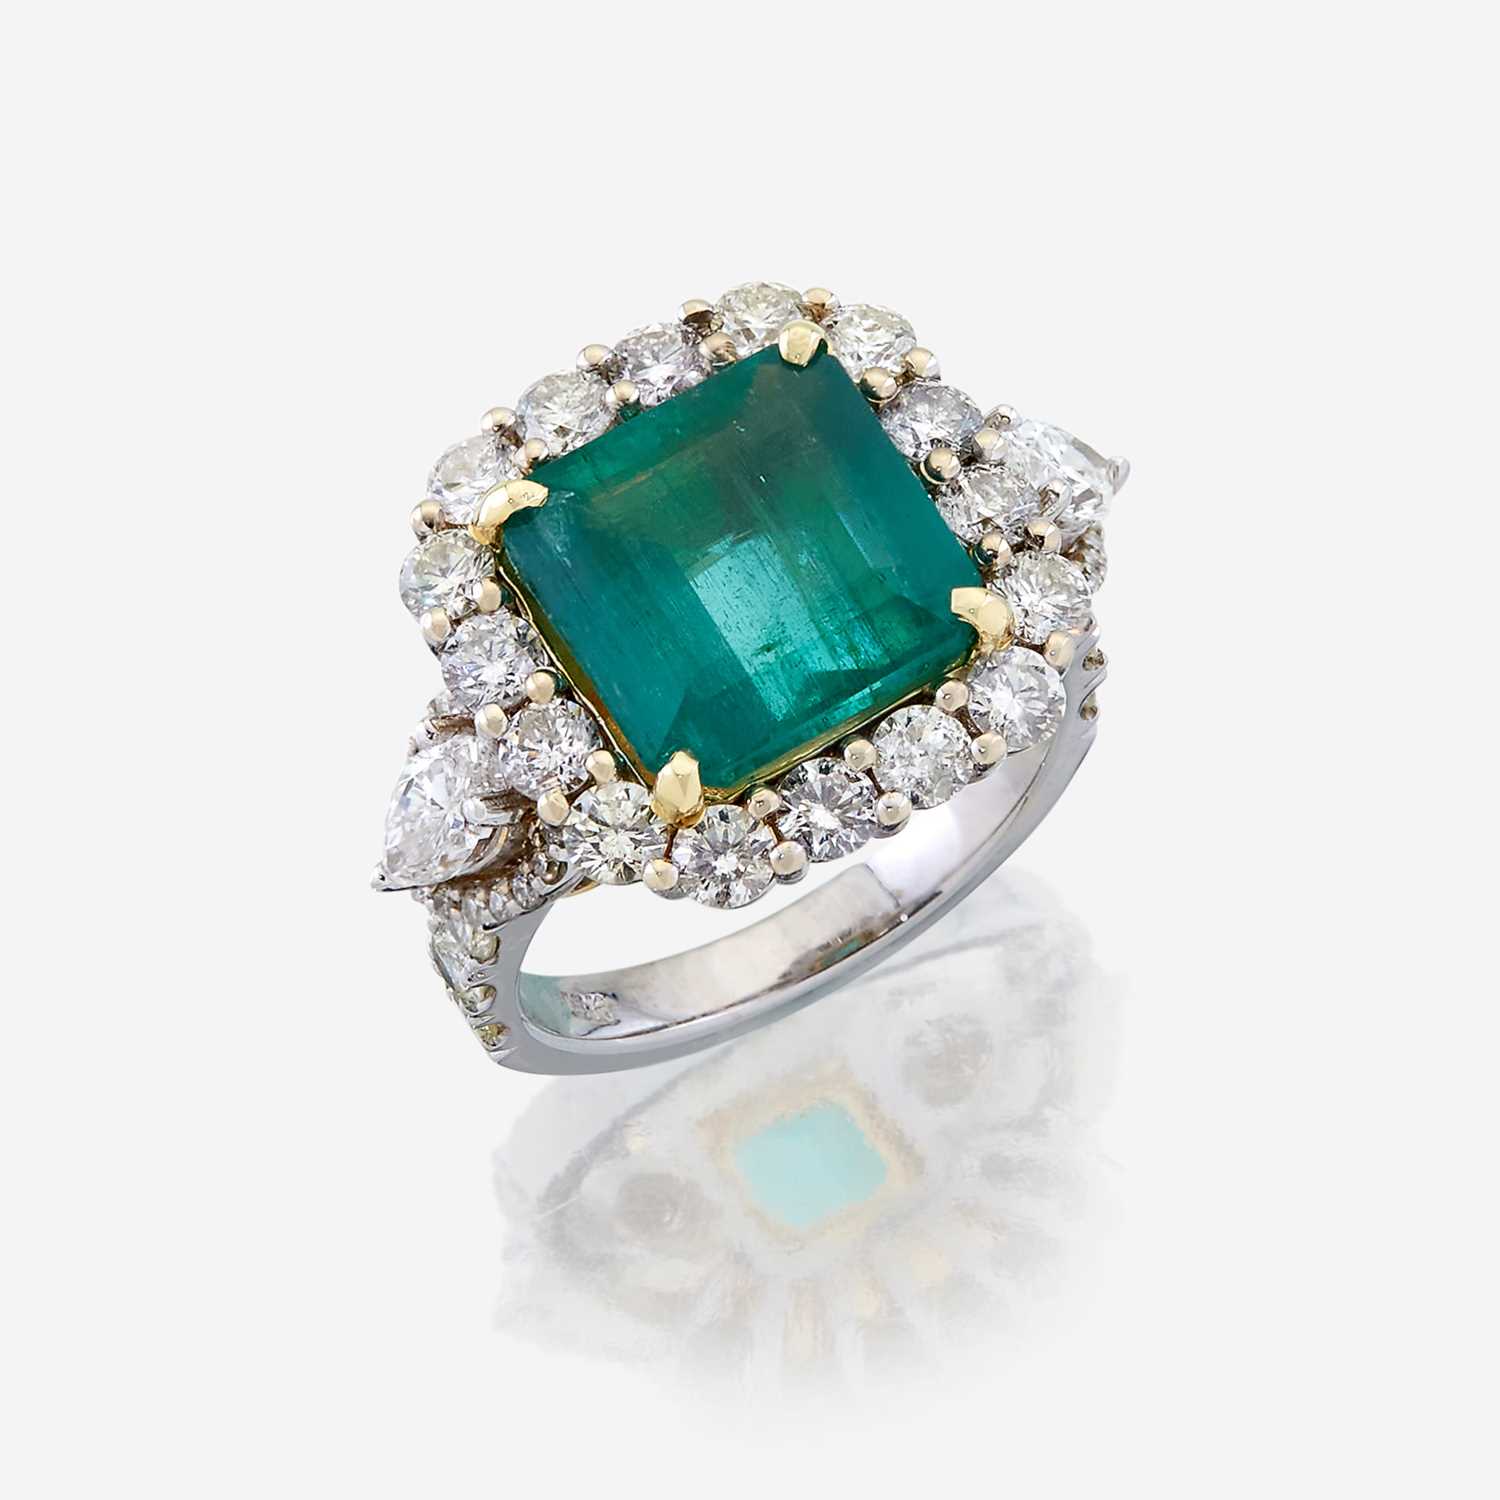 Lot 49 - An emerald, diamond, and eighteen karat white gold ring